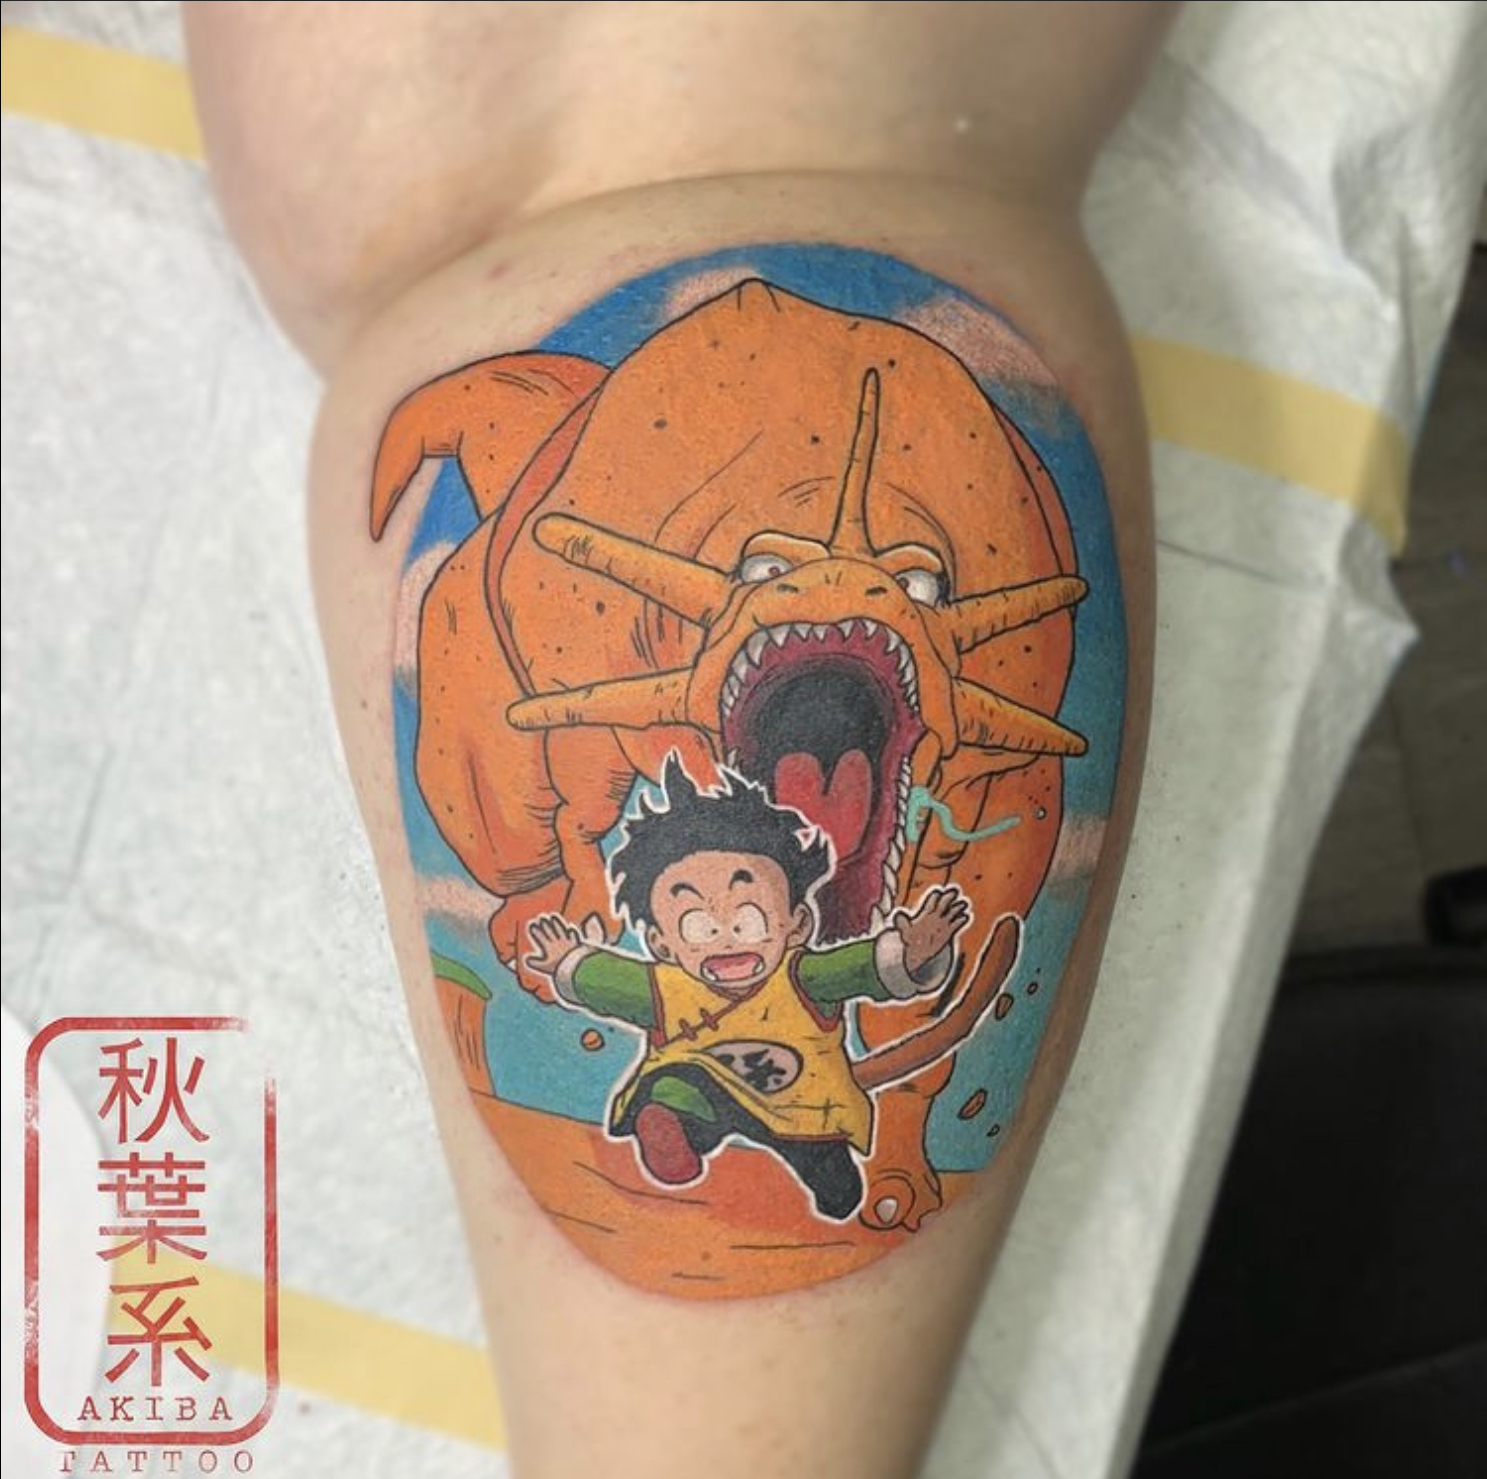 Akiba Tattoo